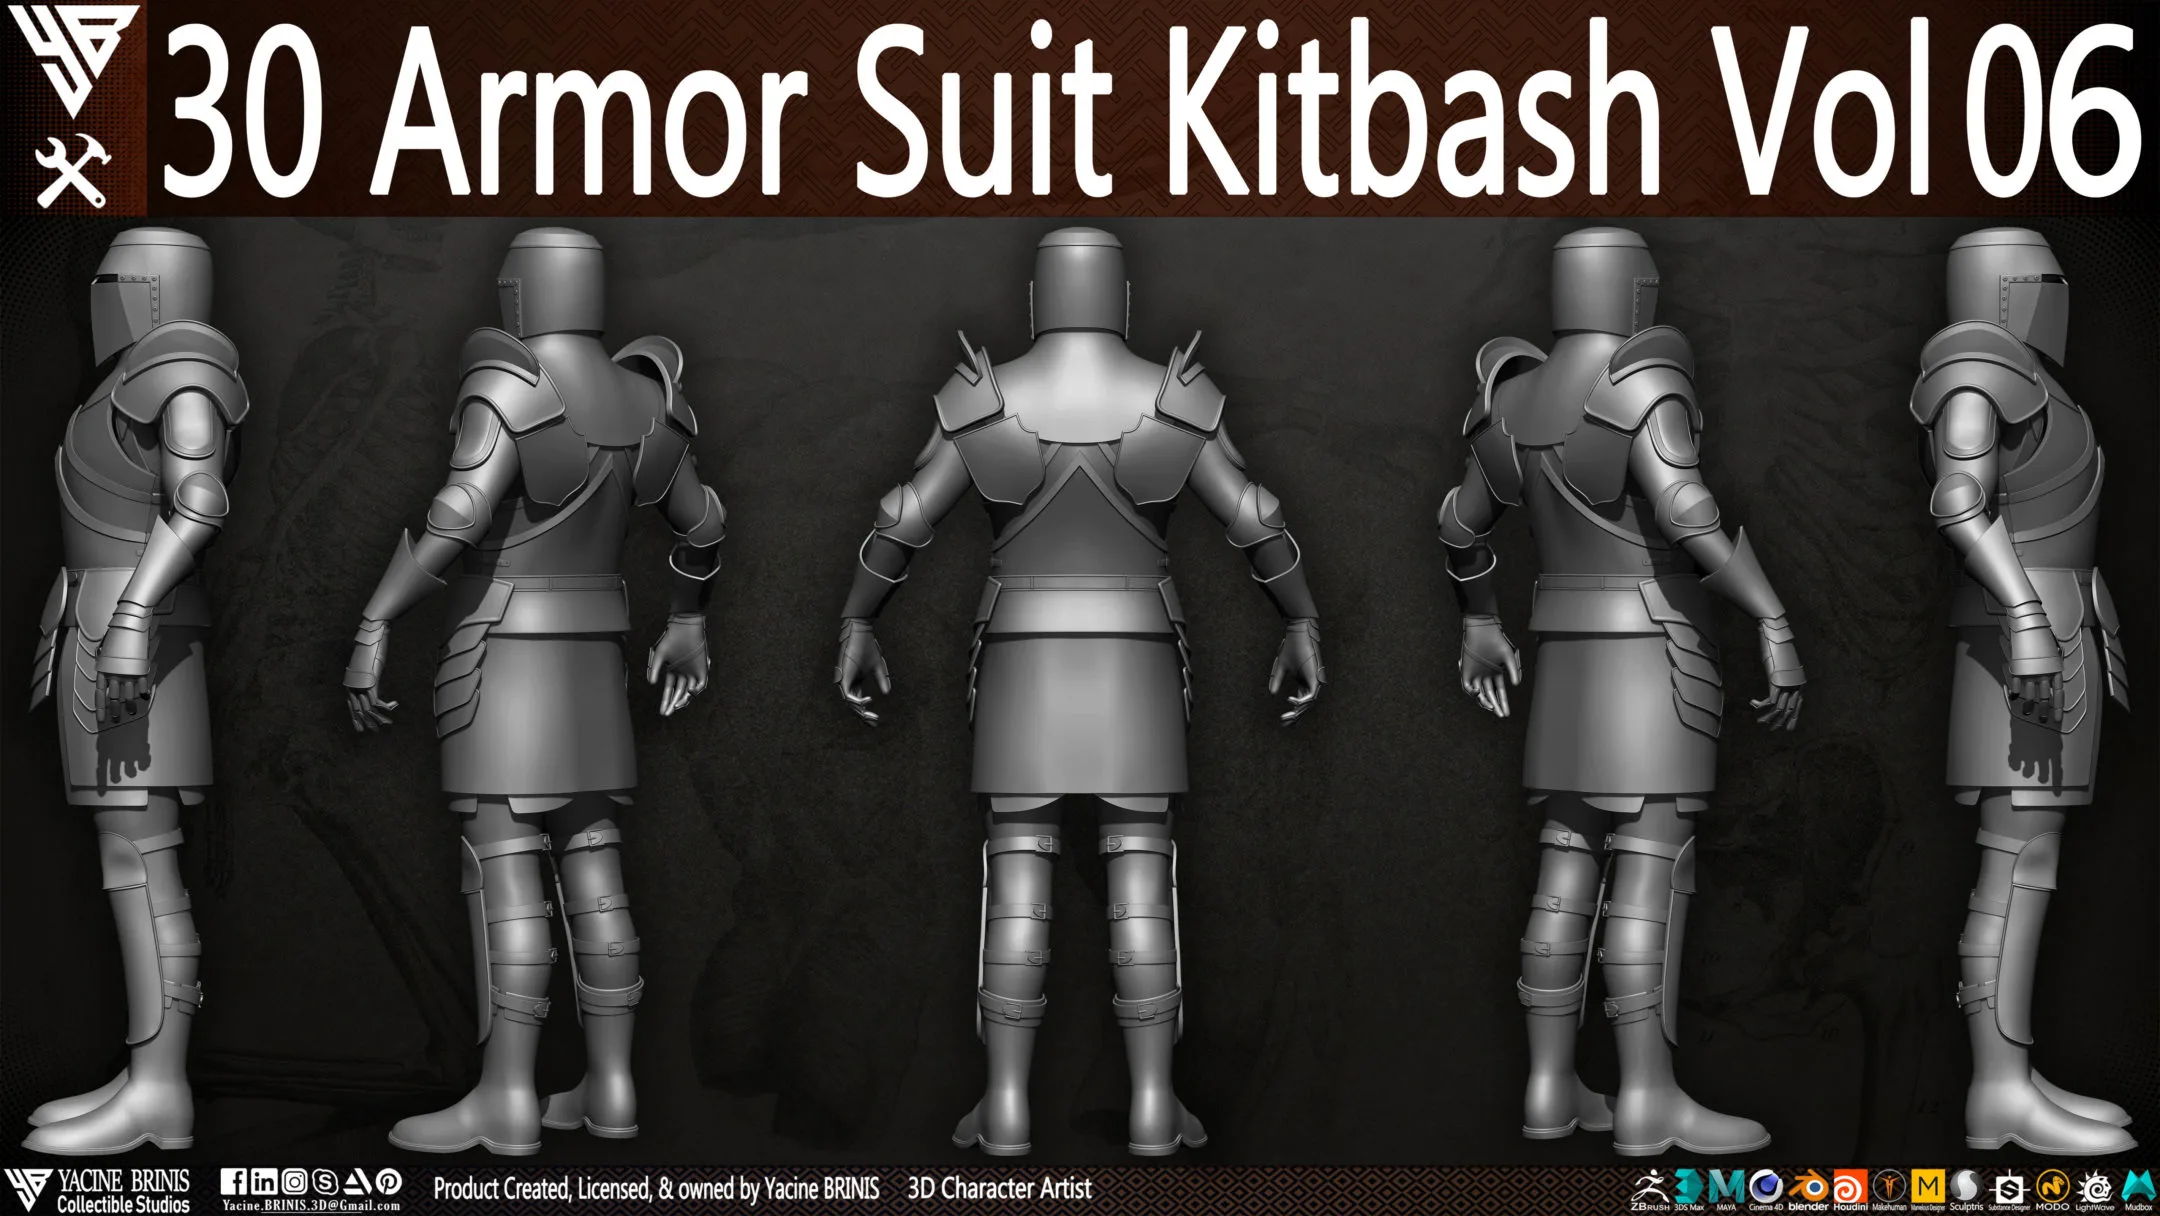 30 Armor Suit Kitbash Vol 06